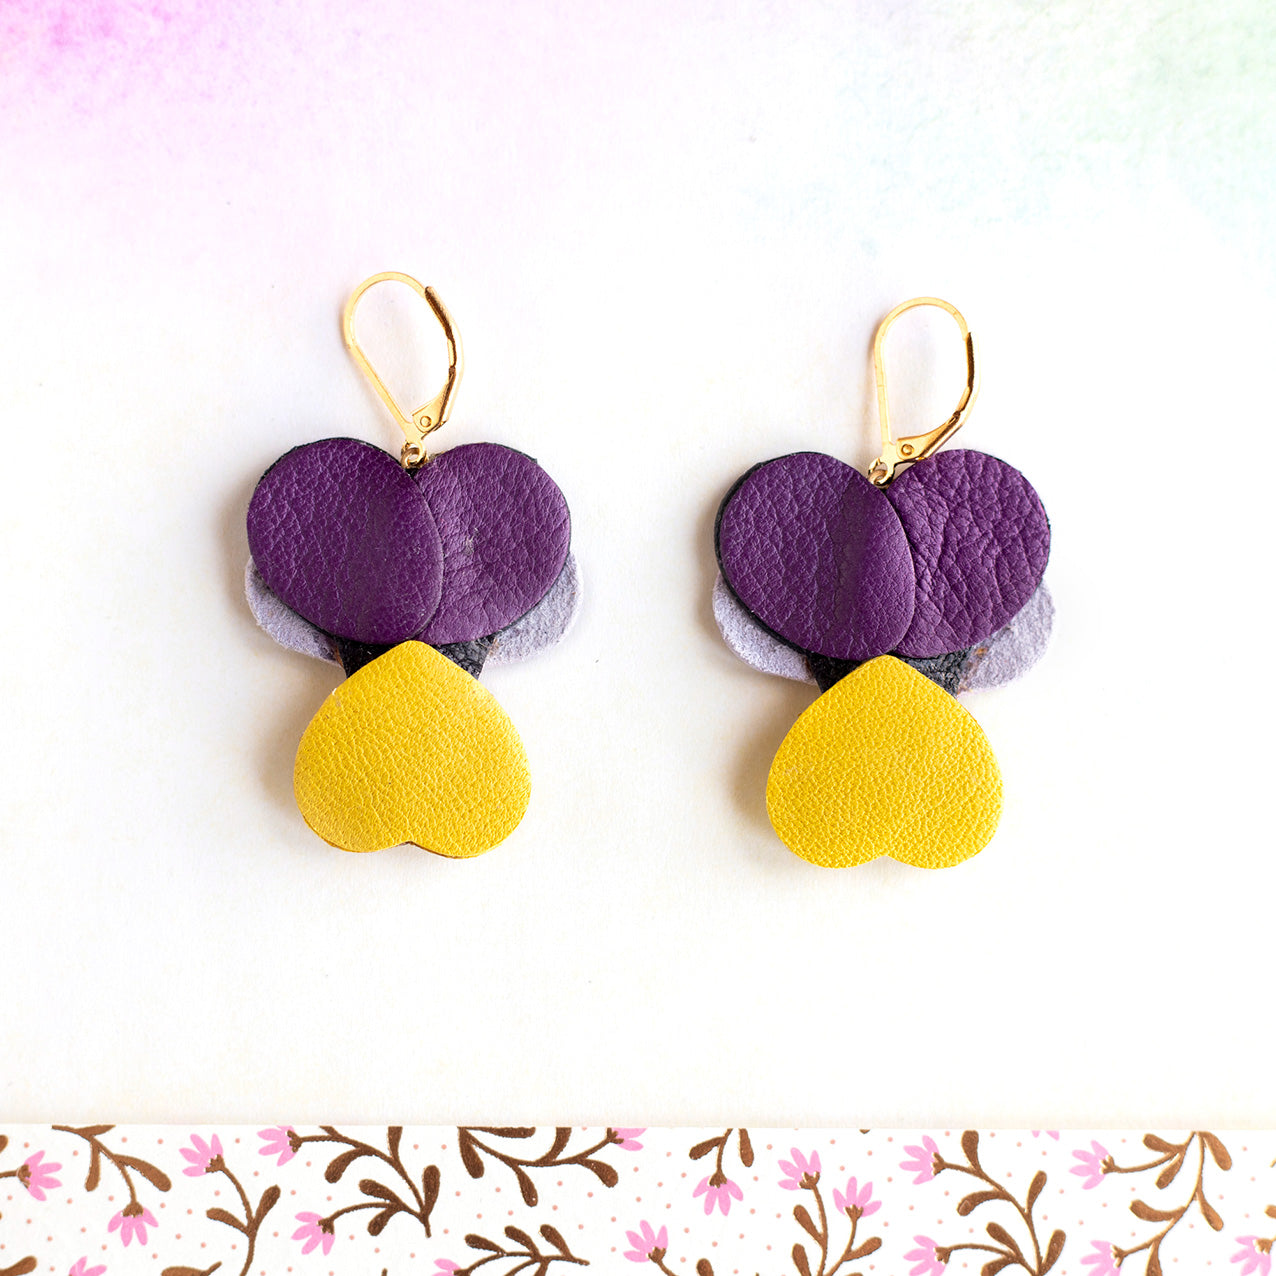 Boucles d’oreilles Pensées - violet métallisé, mauve, jaune, doré